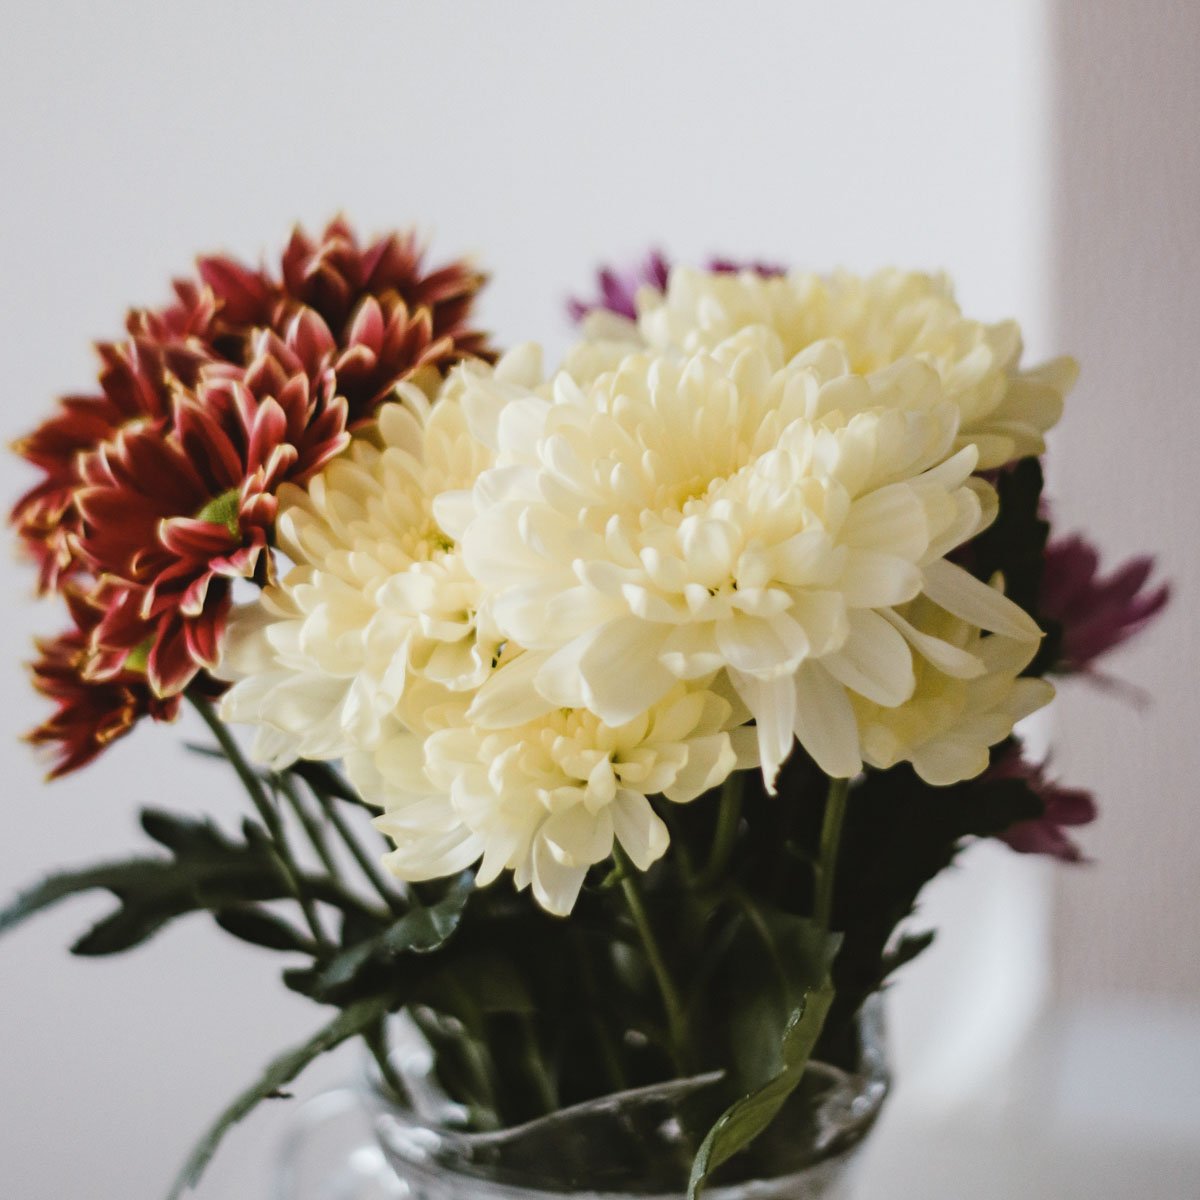 November Birthday – Chrysanthemum